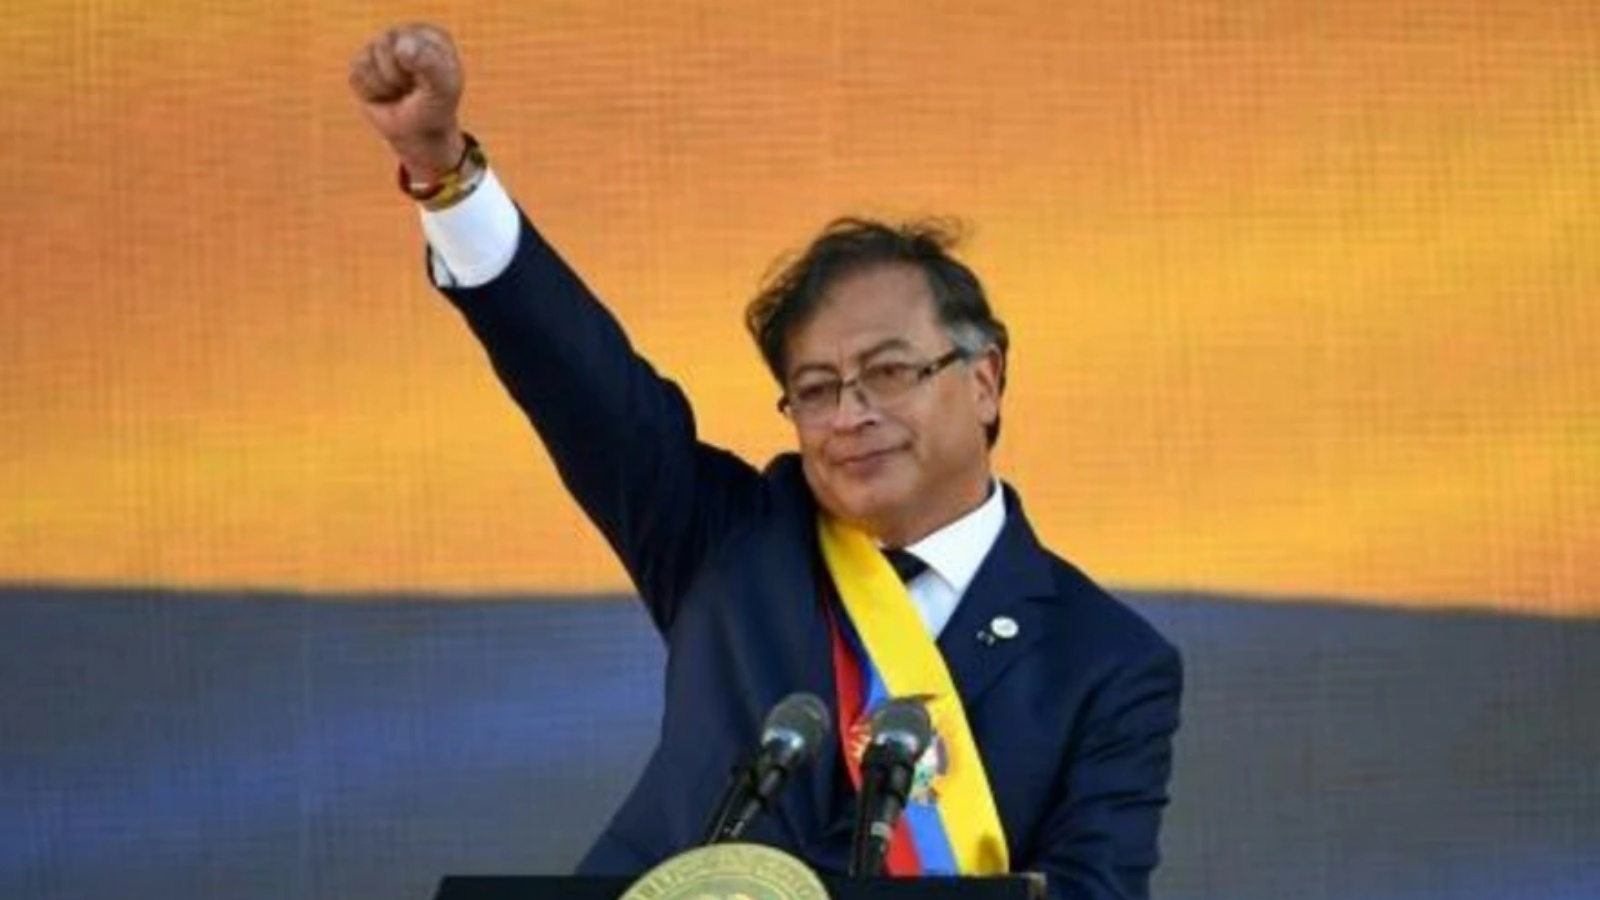 الرئيس الكولومبي غوستافو بيترو في ختام مراسم تنصيبه في بوغوتا في 7 أغسطس 2022